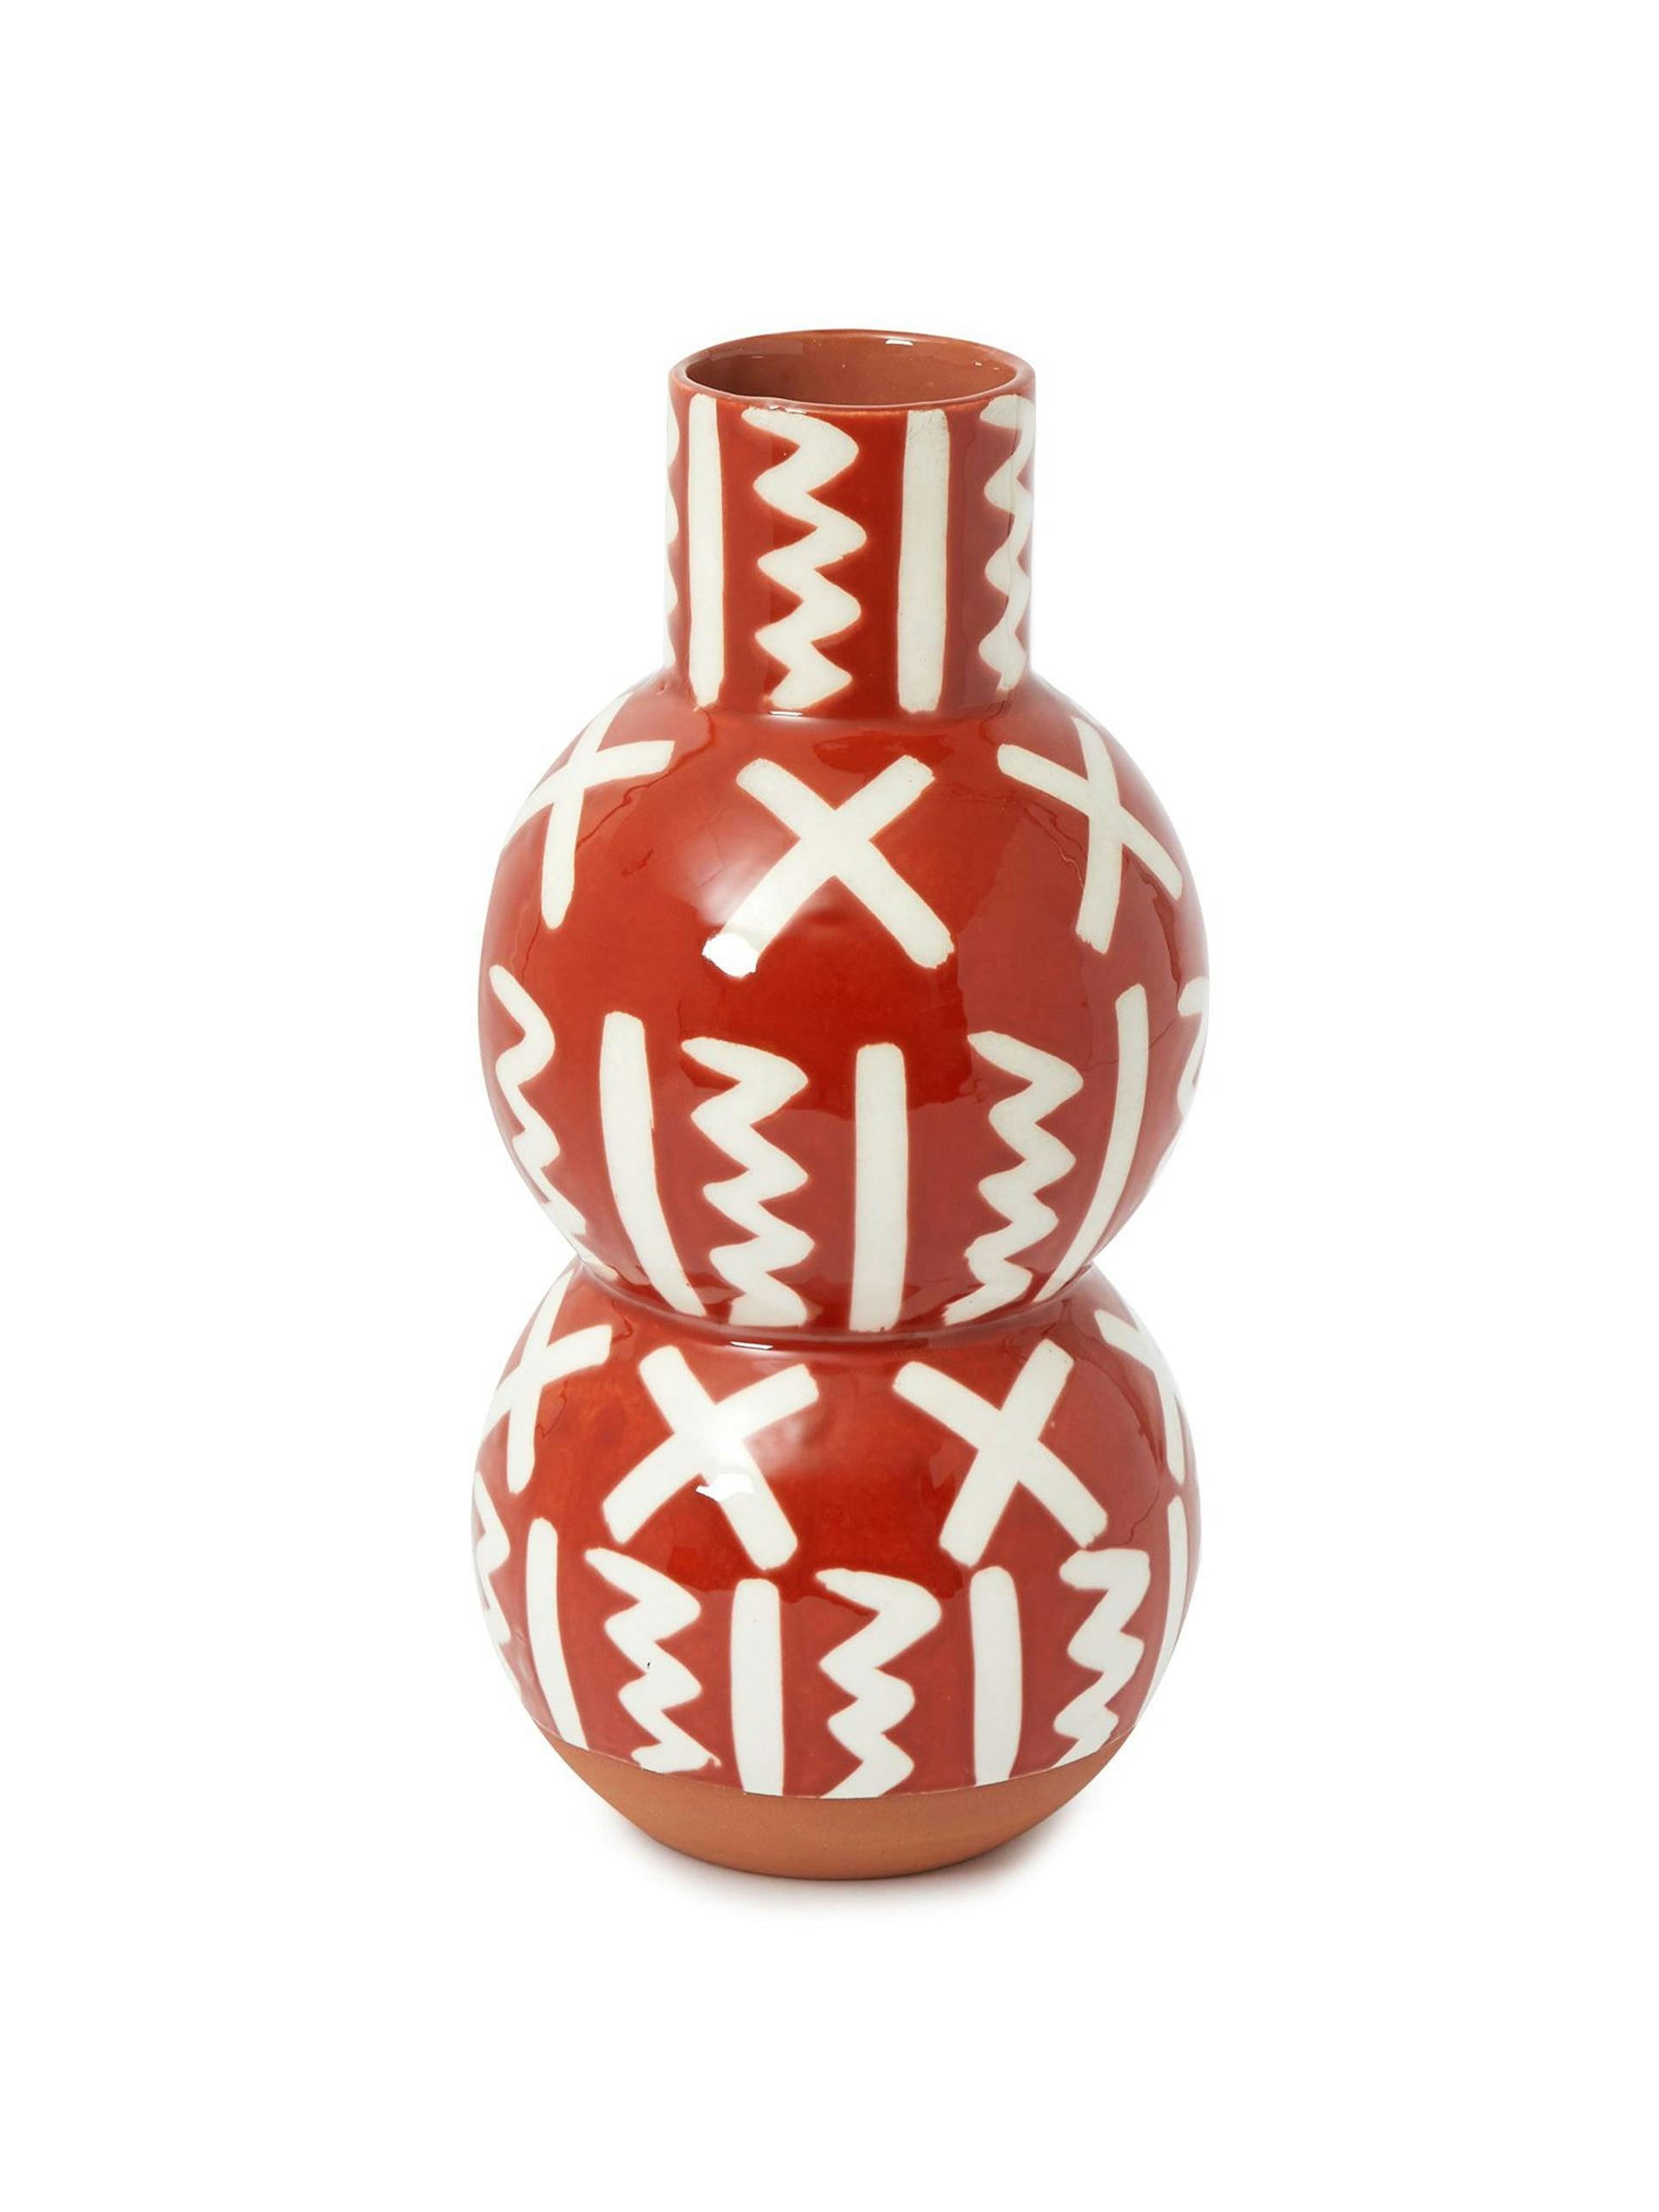 Hand-painted terracotta bobble vase